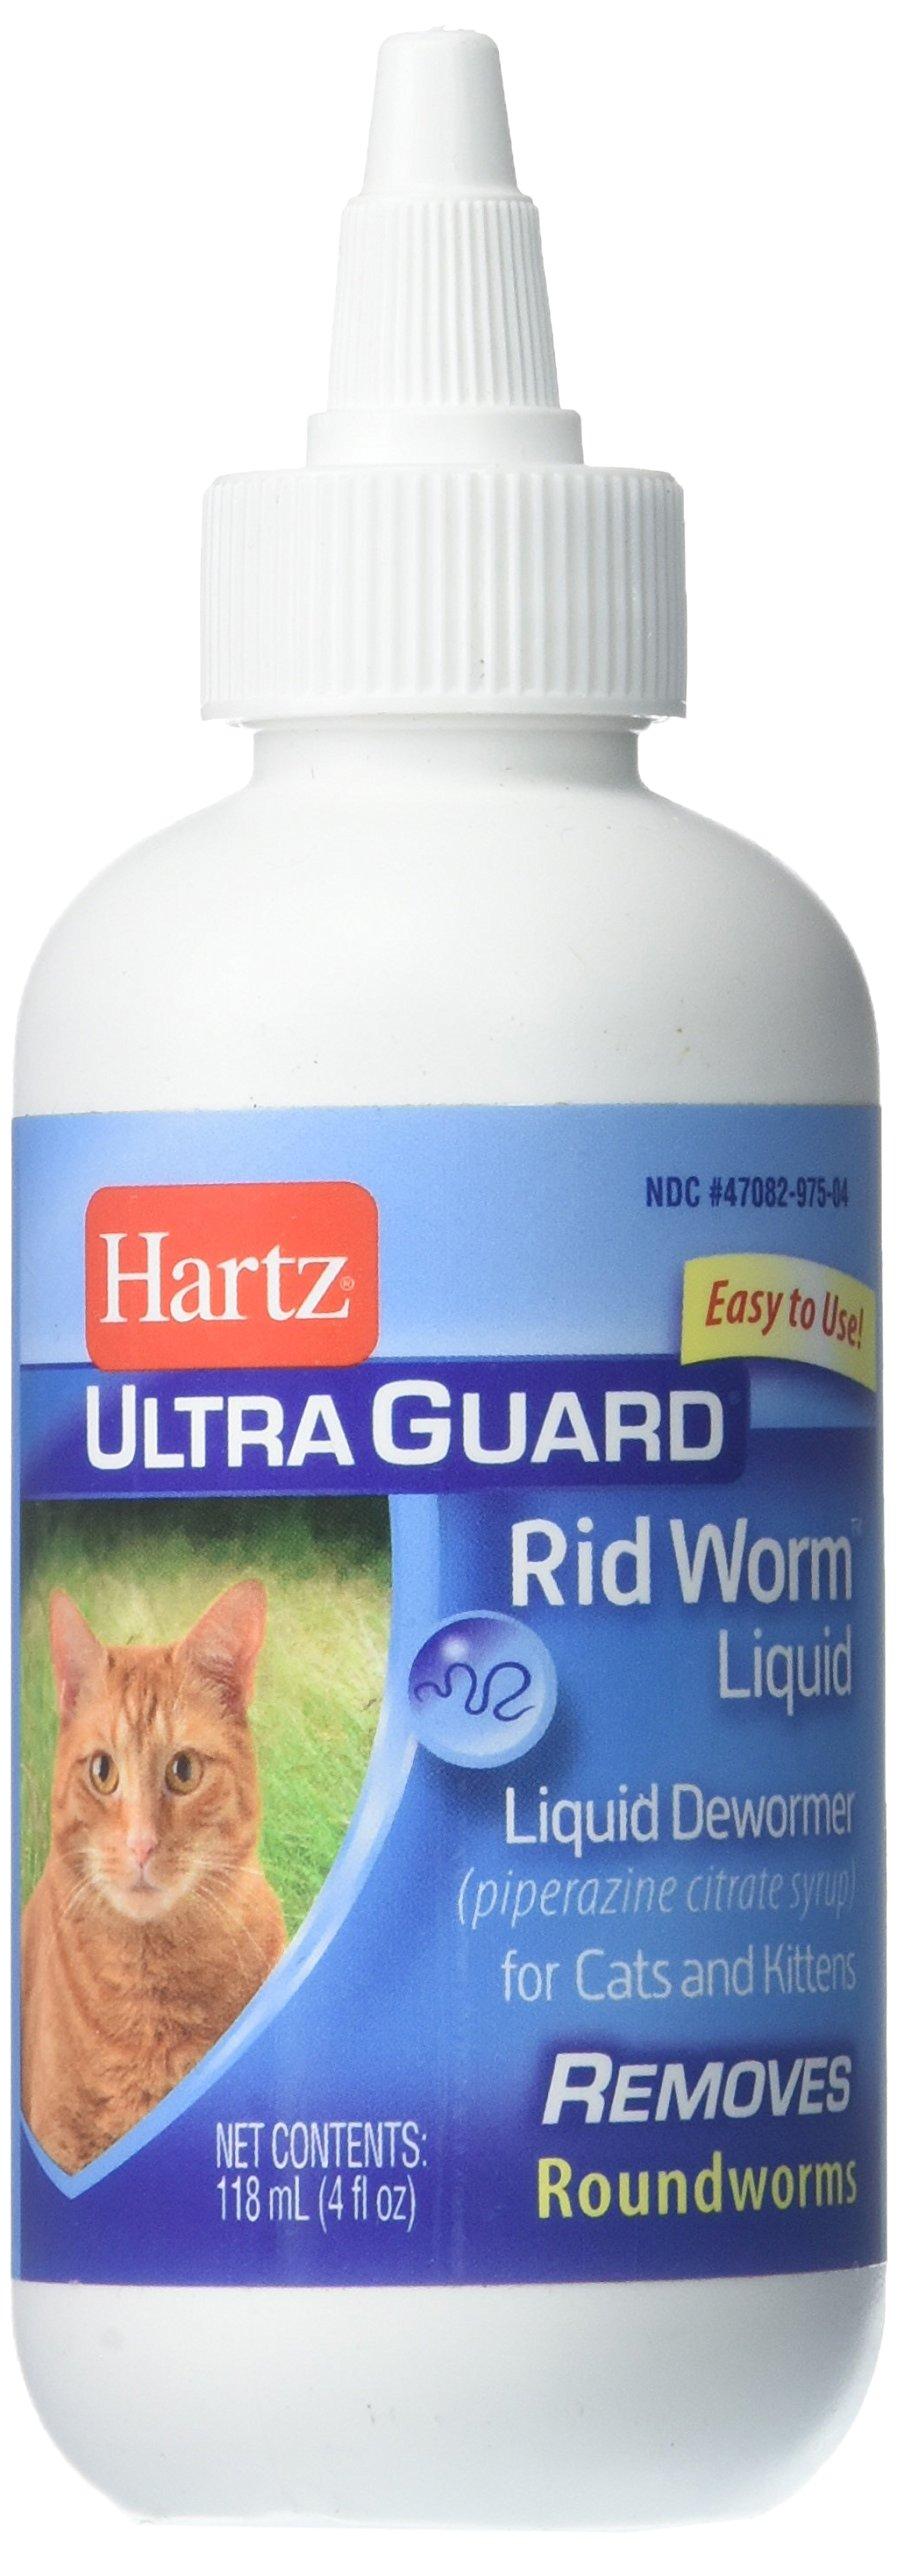 Hartz UltraGuard Rid Worm Liquid for Cats 4 oz